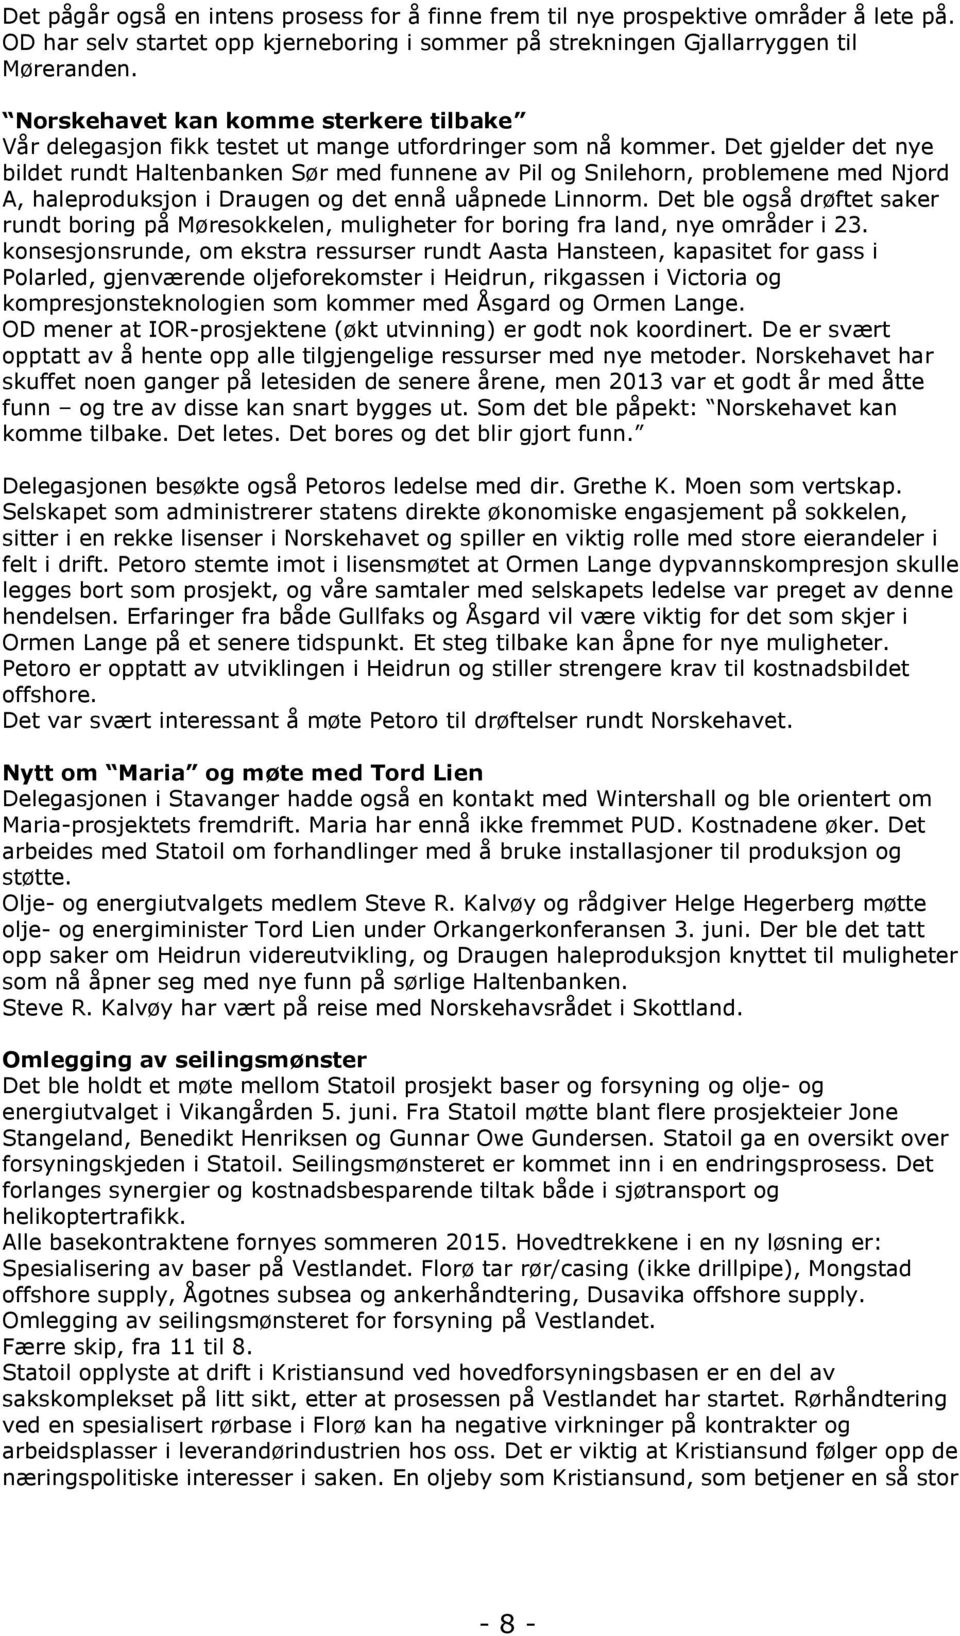 Det gjelder det nye bildet rundt Haltenbanken Sør med funnene av Pil og Snilehorn, problemene med Njord A, haleproduksjon i Draugen og det ennå uåpnede Linnorm.